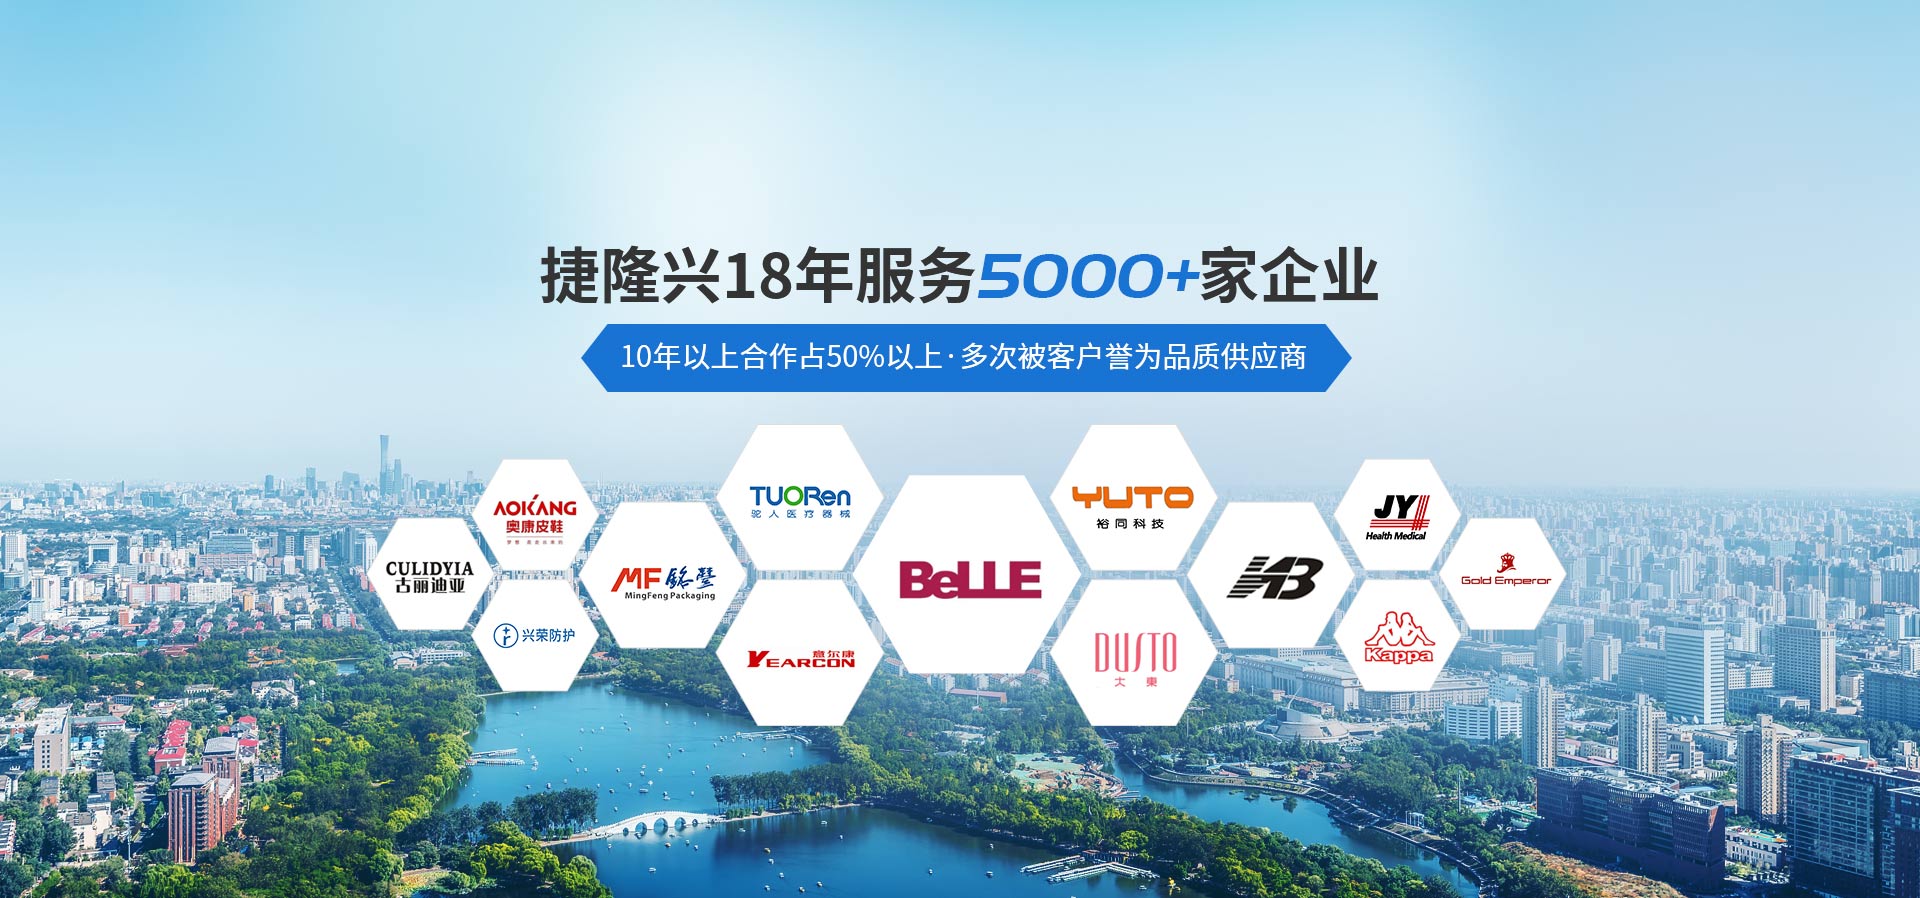 捷隆兴18年服务5000+企业